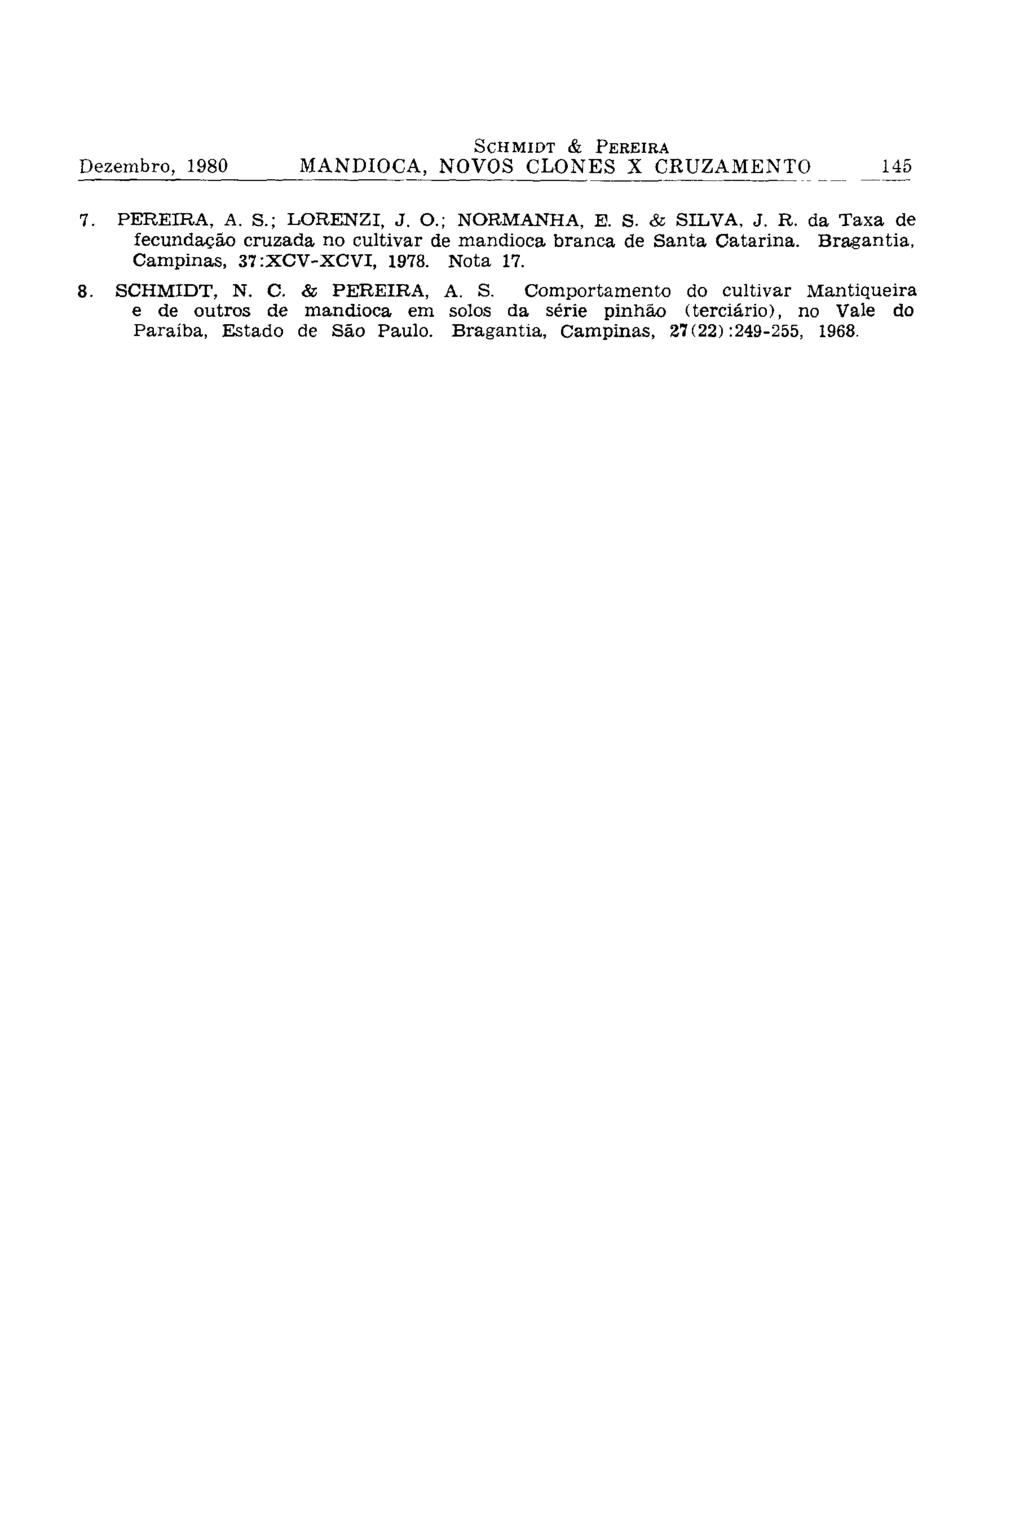 7. PEREIRA, A. S.; LORENZI, J. O.; NORMANHA, E. S. & SILVA, J. R. da Taxa de fecundação cruzada no cultivar de mandioca branca de Santa Catarina. Bragantia, Campinas, 37:XCV-XCVI, 1978. Nota 17. 8.